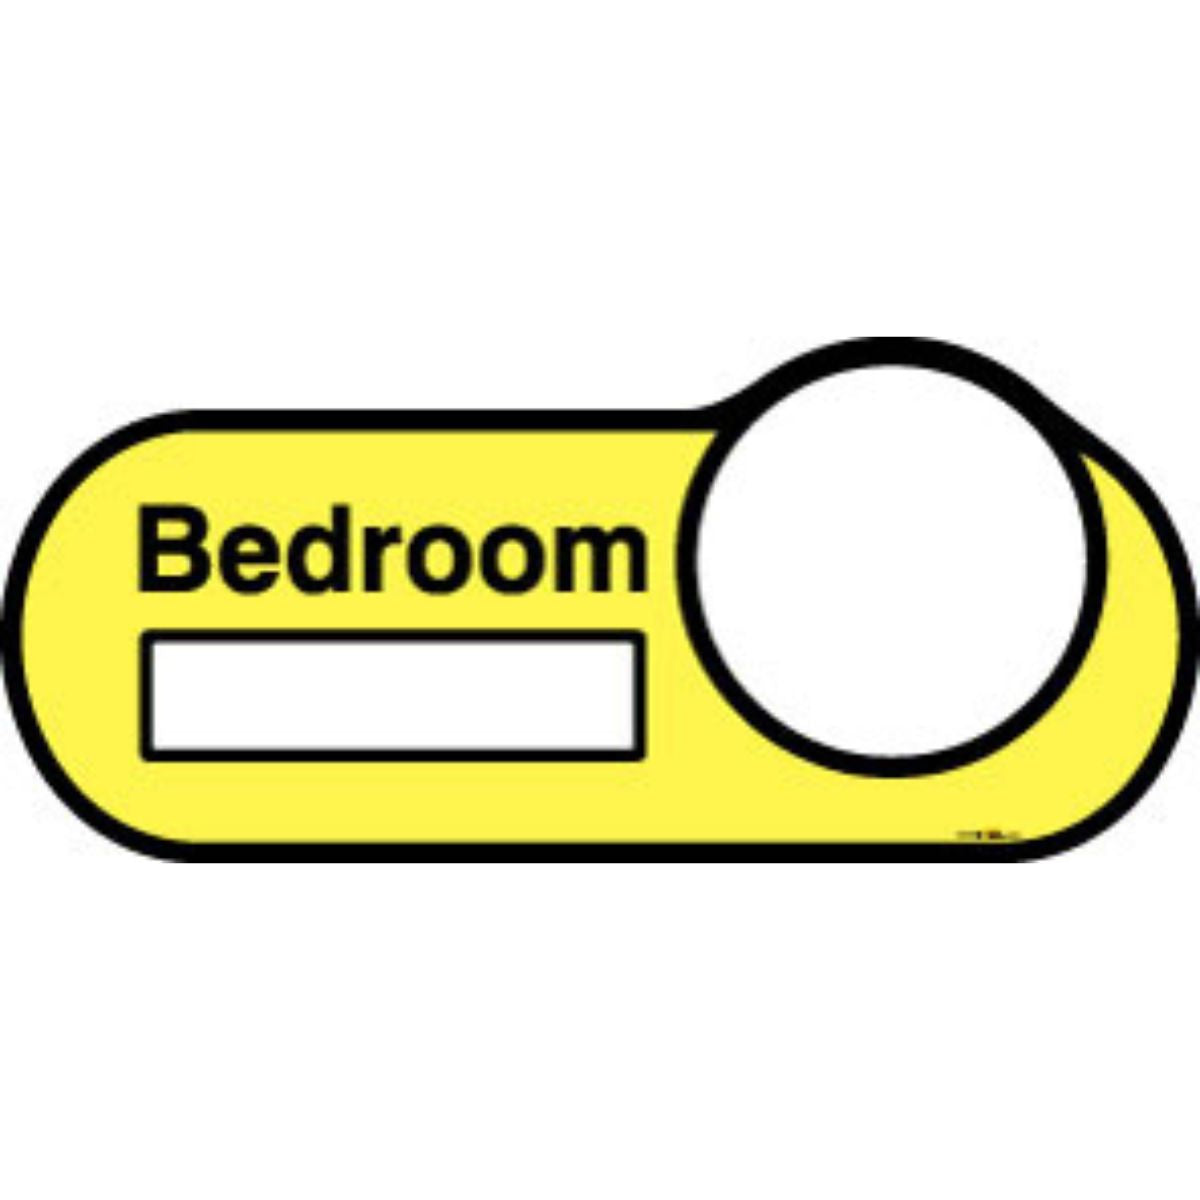 Bedroom Interchangeable Sign, 30cm